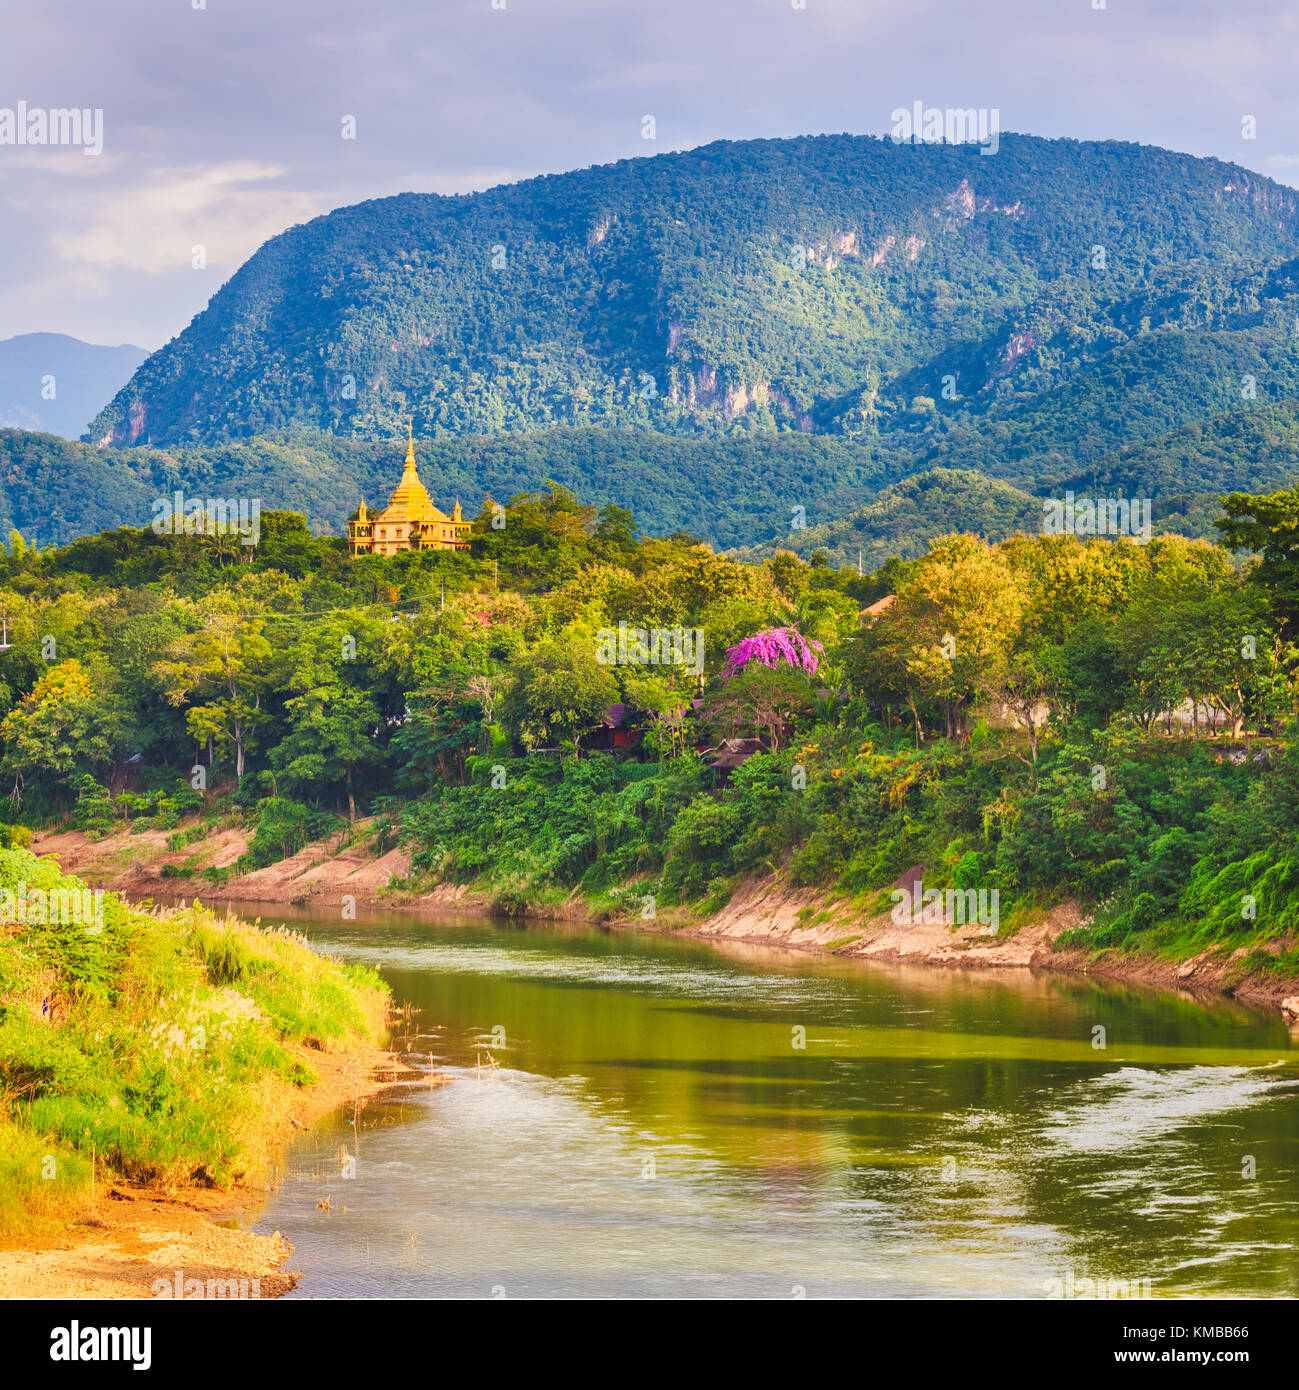 Vue de la rivière, temple et les montagnes. Beau paysage. Luang Prabang. Le Laos. Banque D'Images